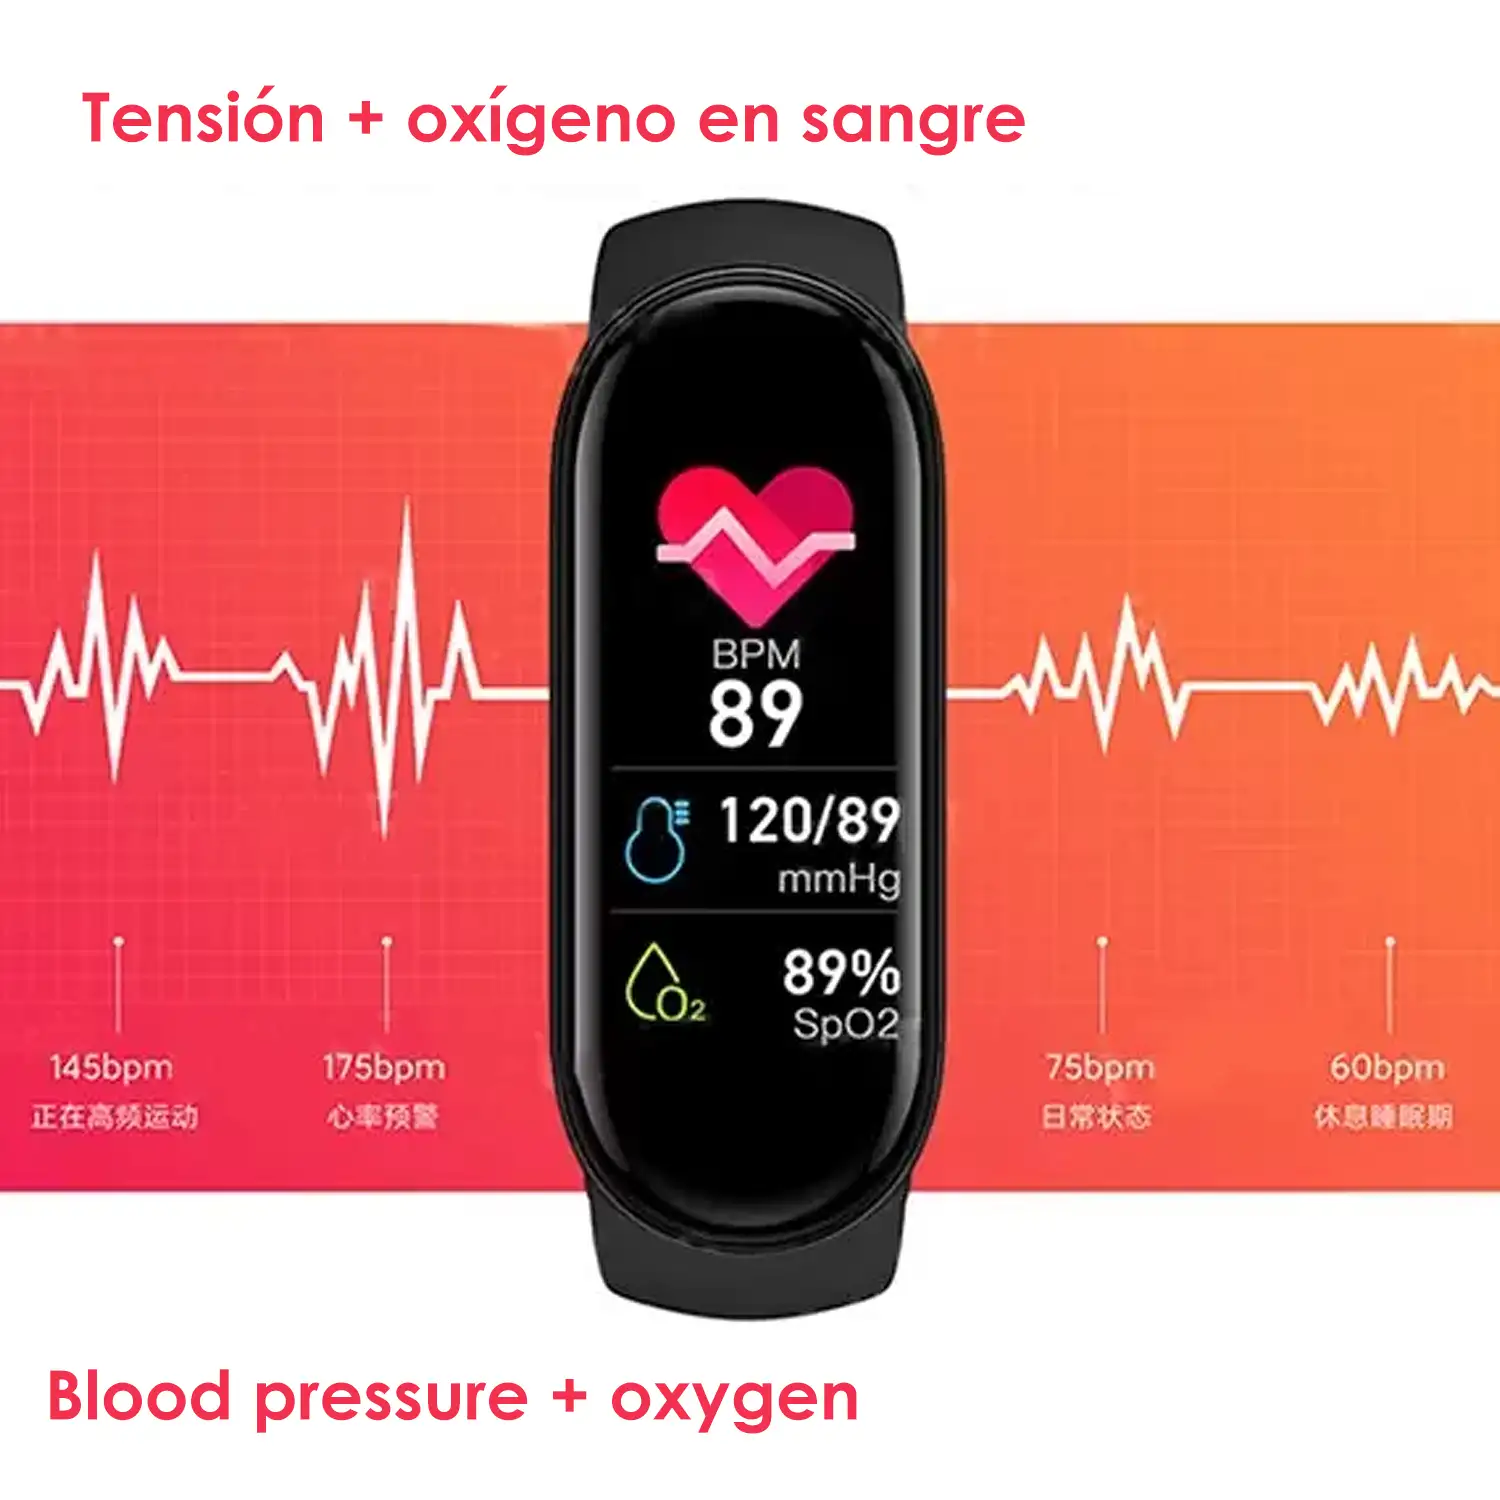 Brazalete inteligente M6 con monitor cardiaco, de tensión y oxígeno en sangre. Modo multideporte.